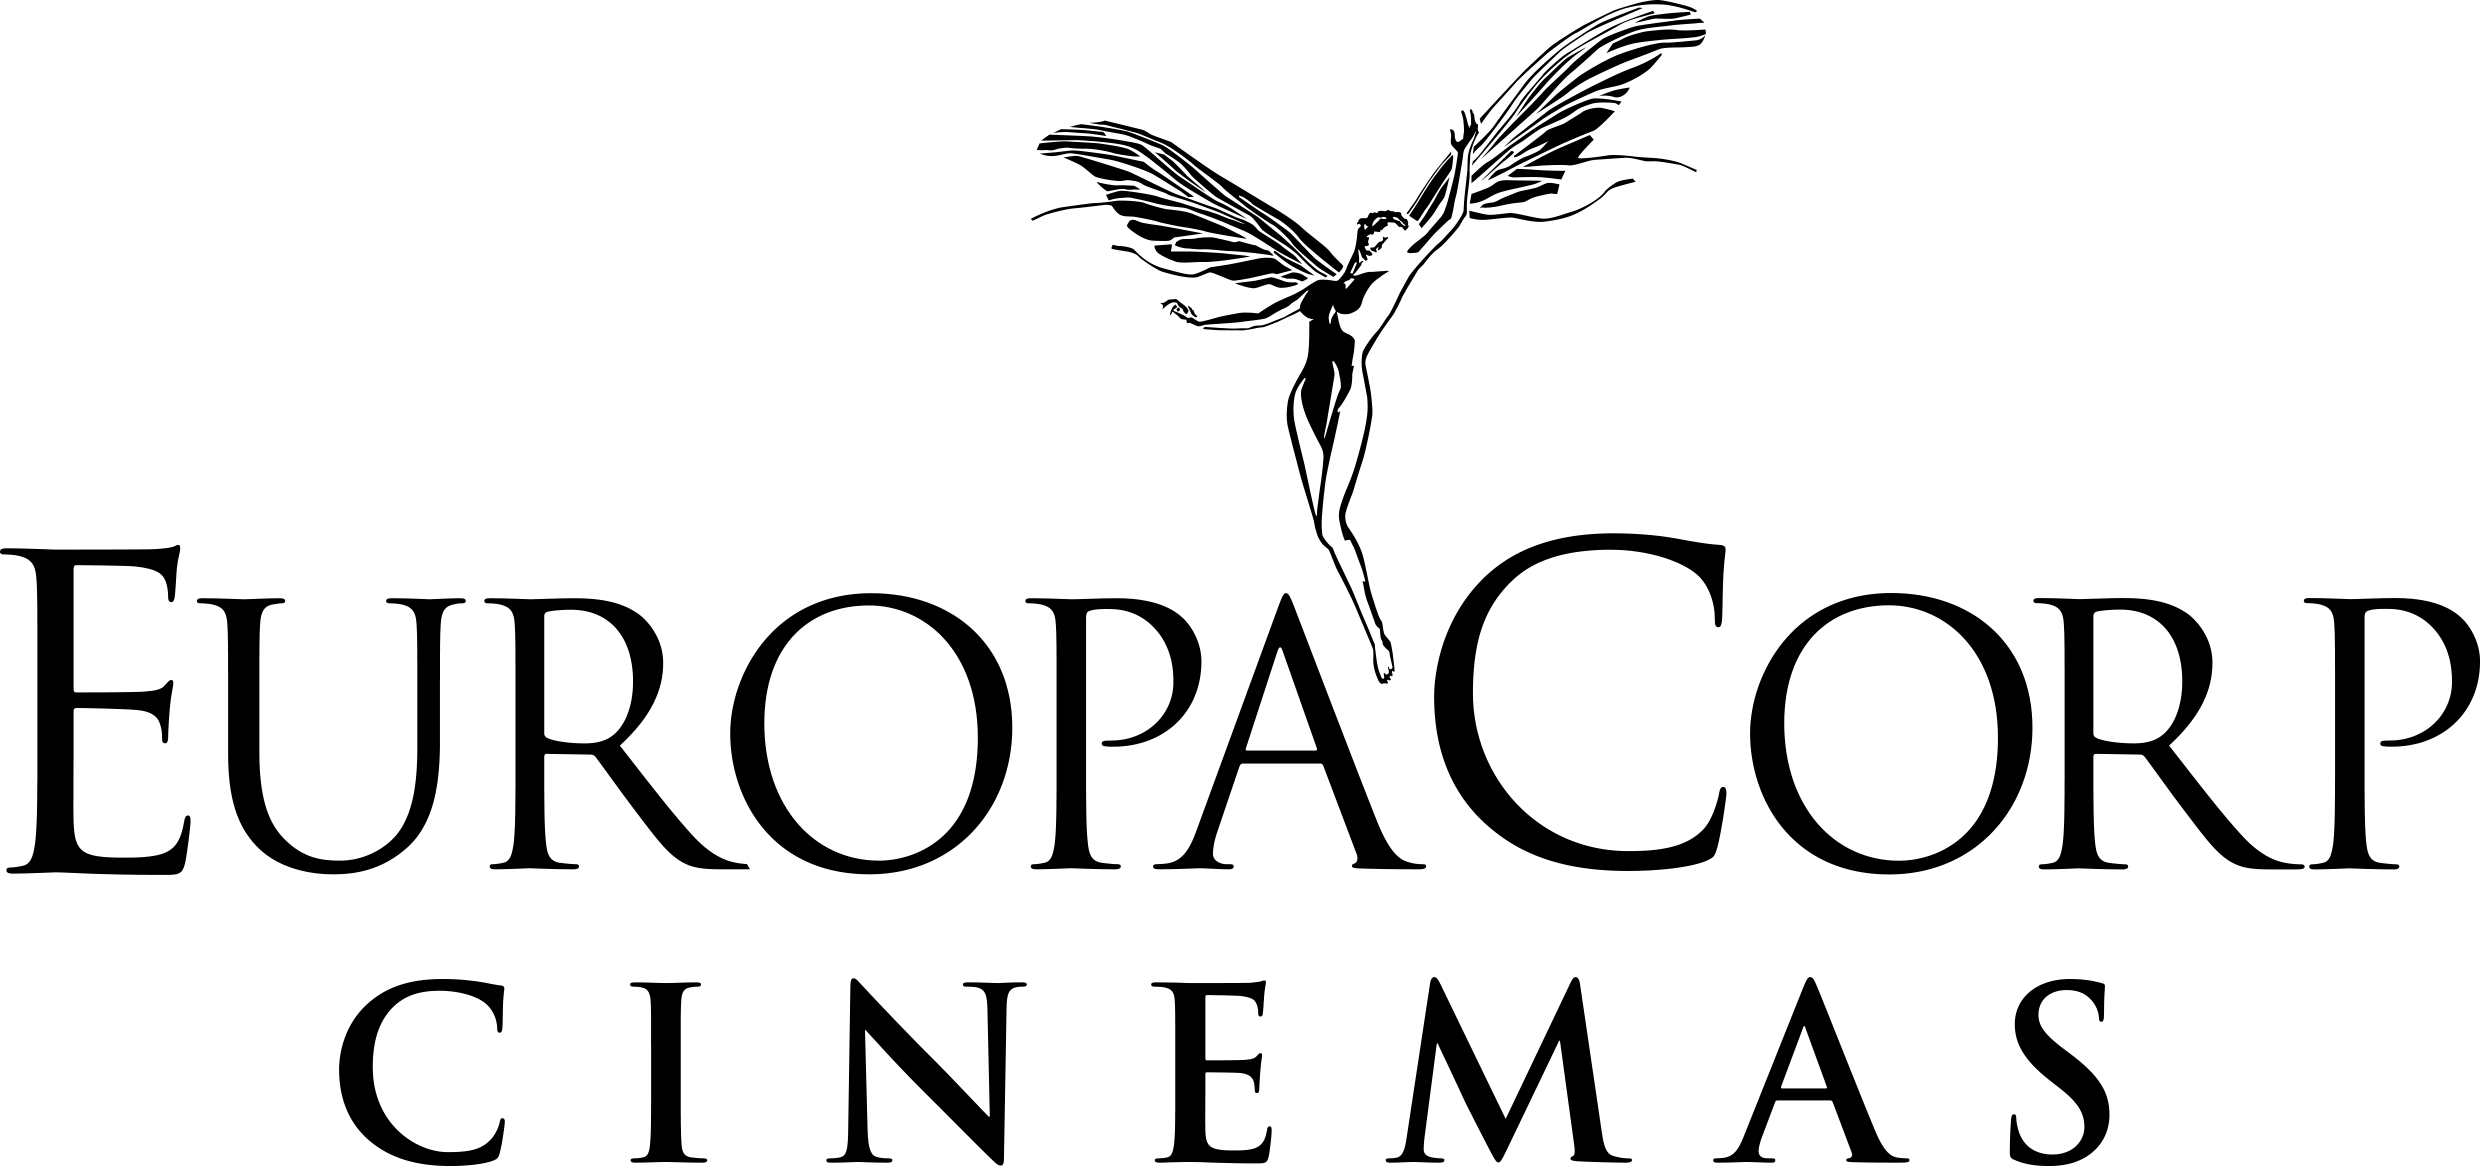 EuropaCorp Logo - Europacorp CINEMAS